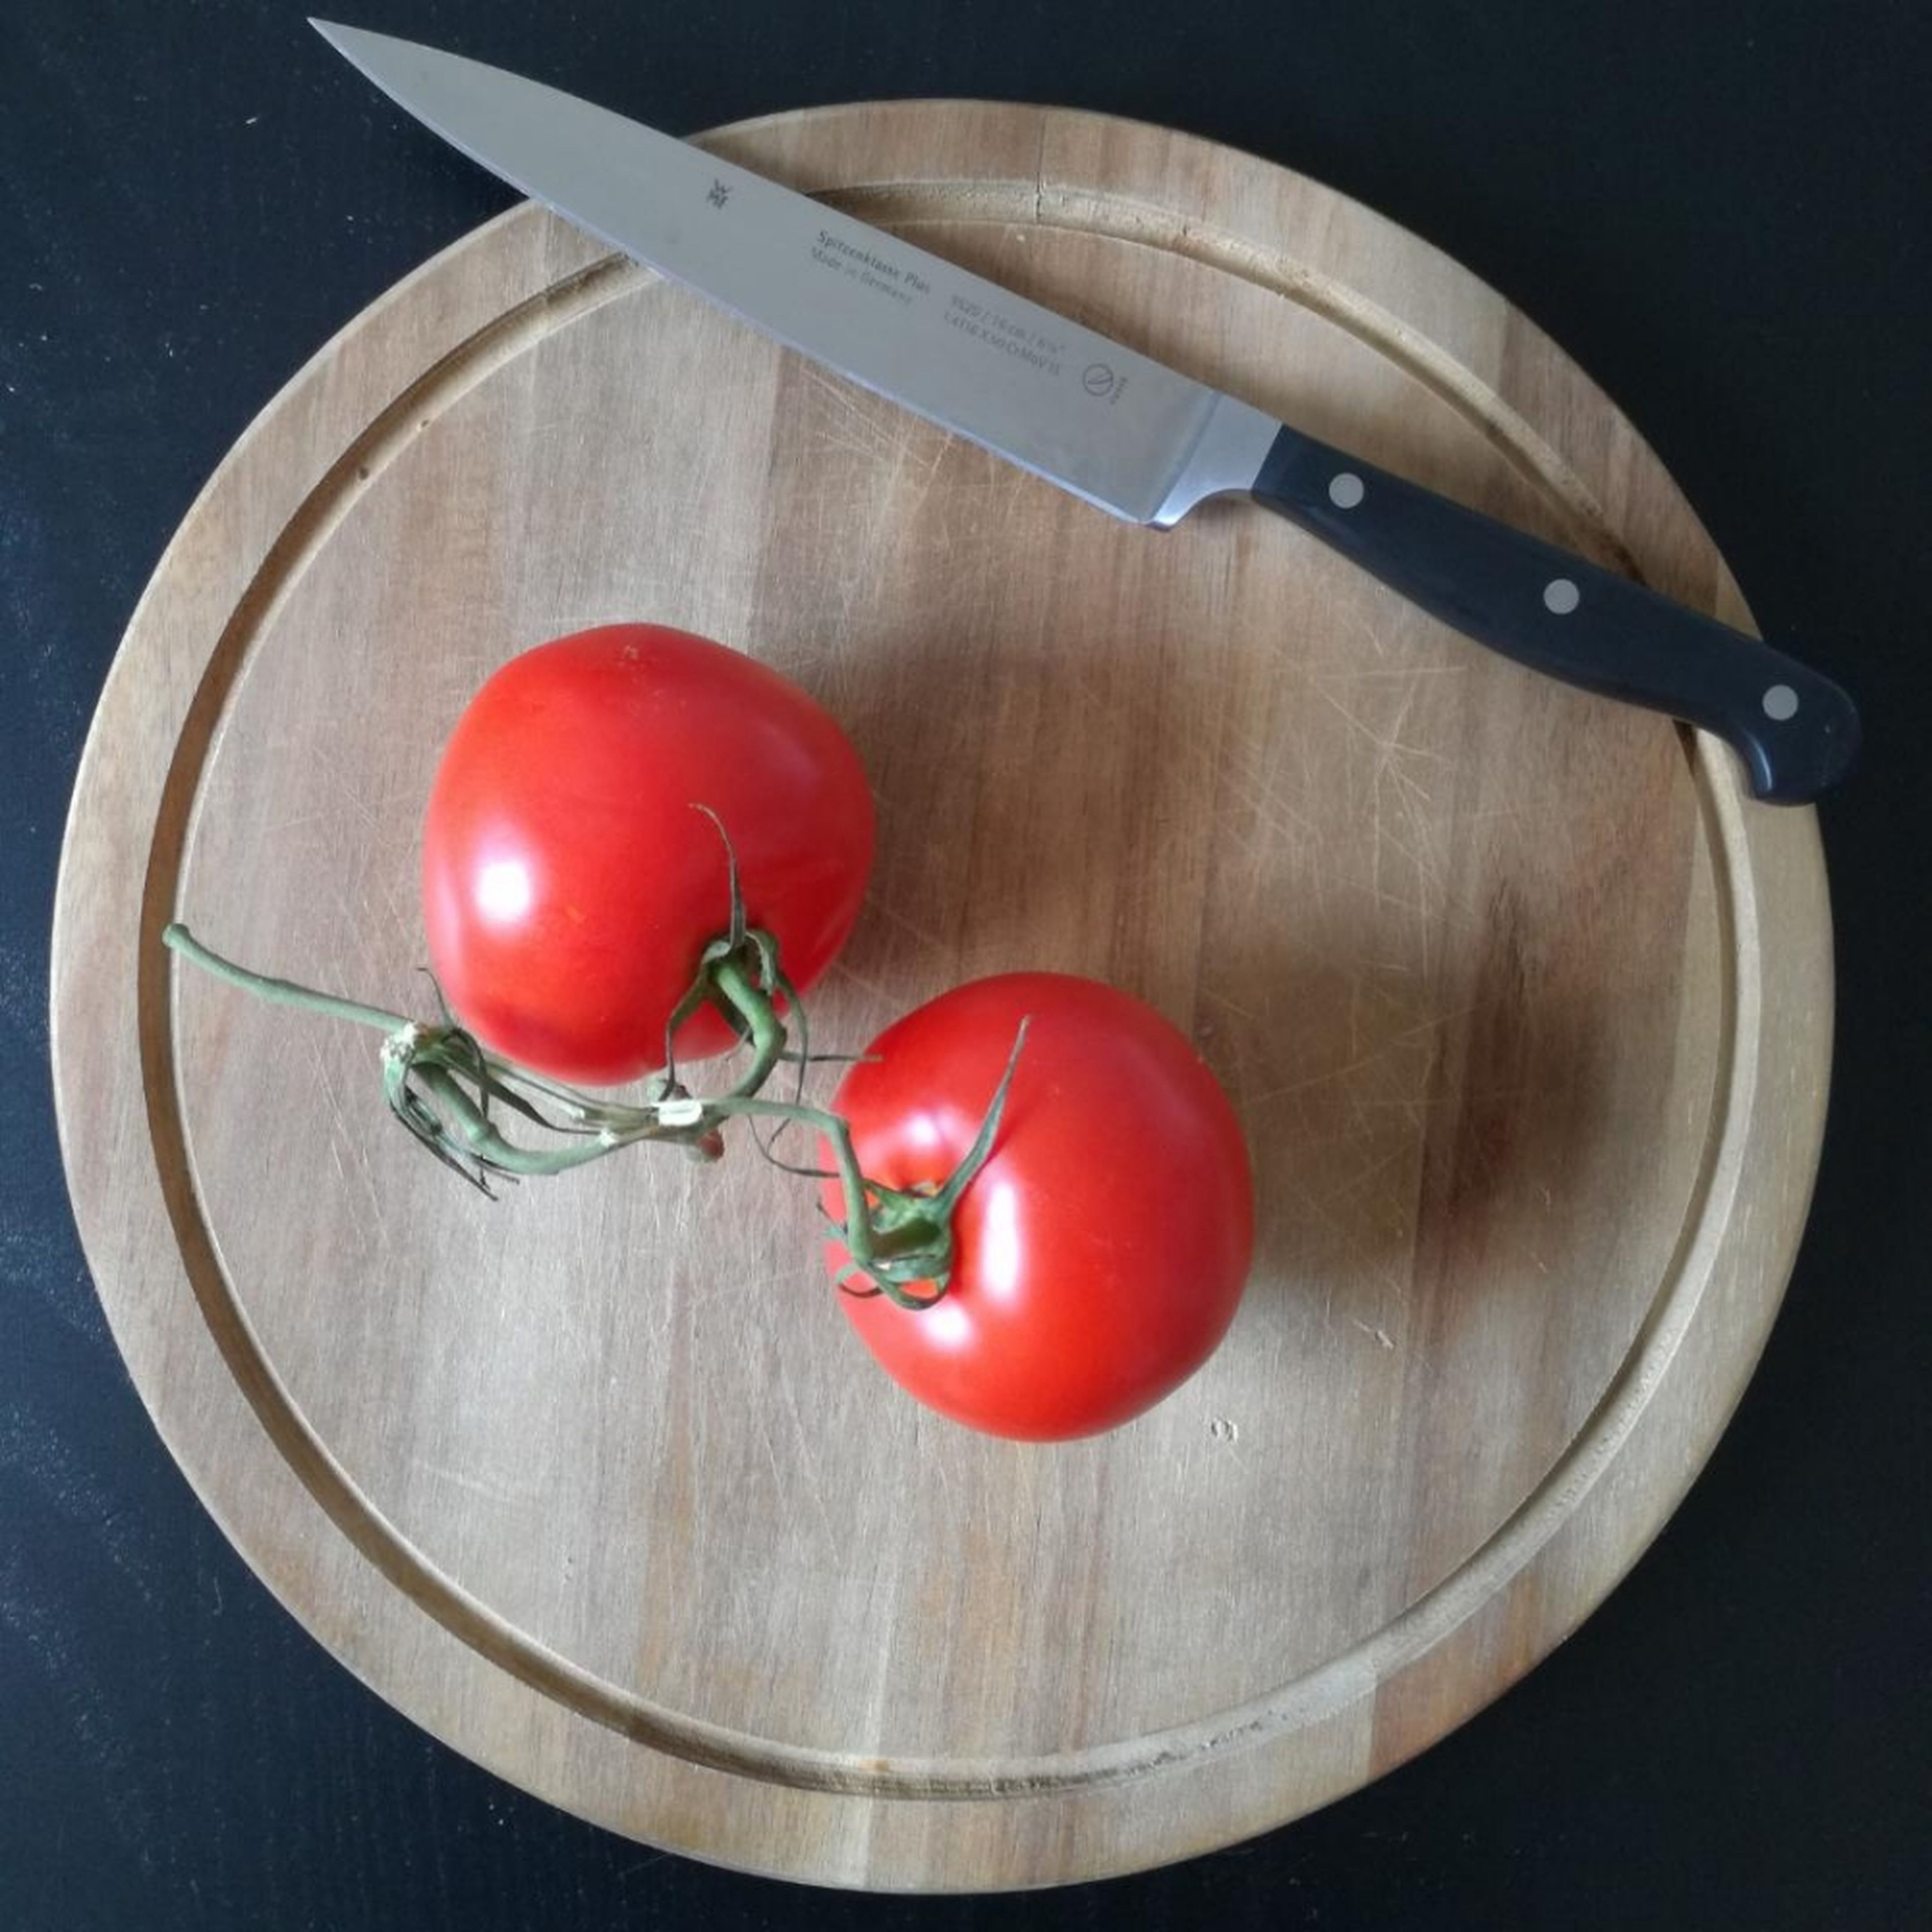 Tomaten klein schneiden.